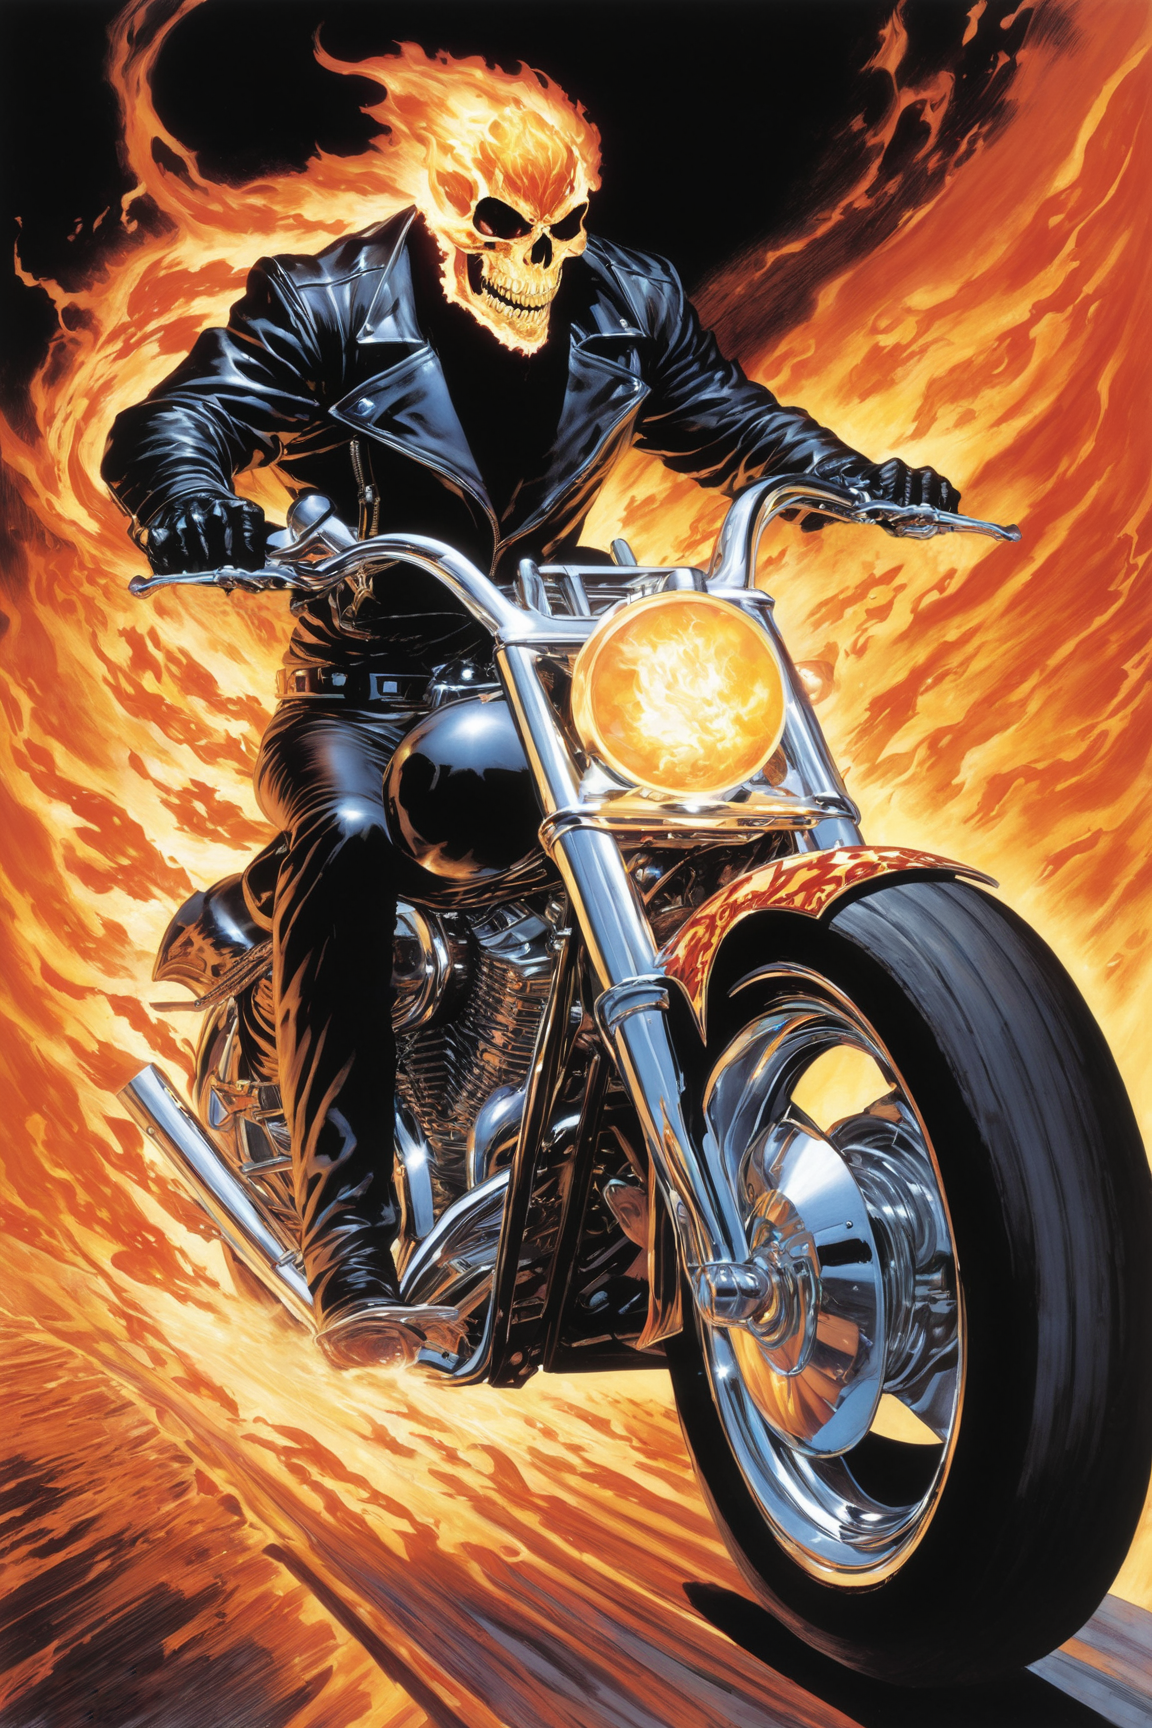 Ghost Rider by mateussanchessouza on DeviantArt